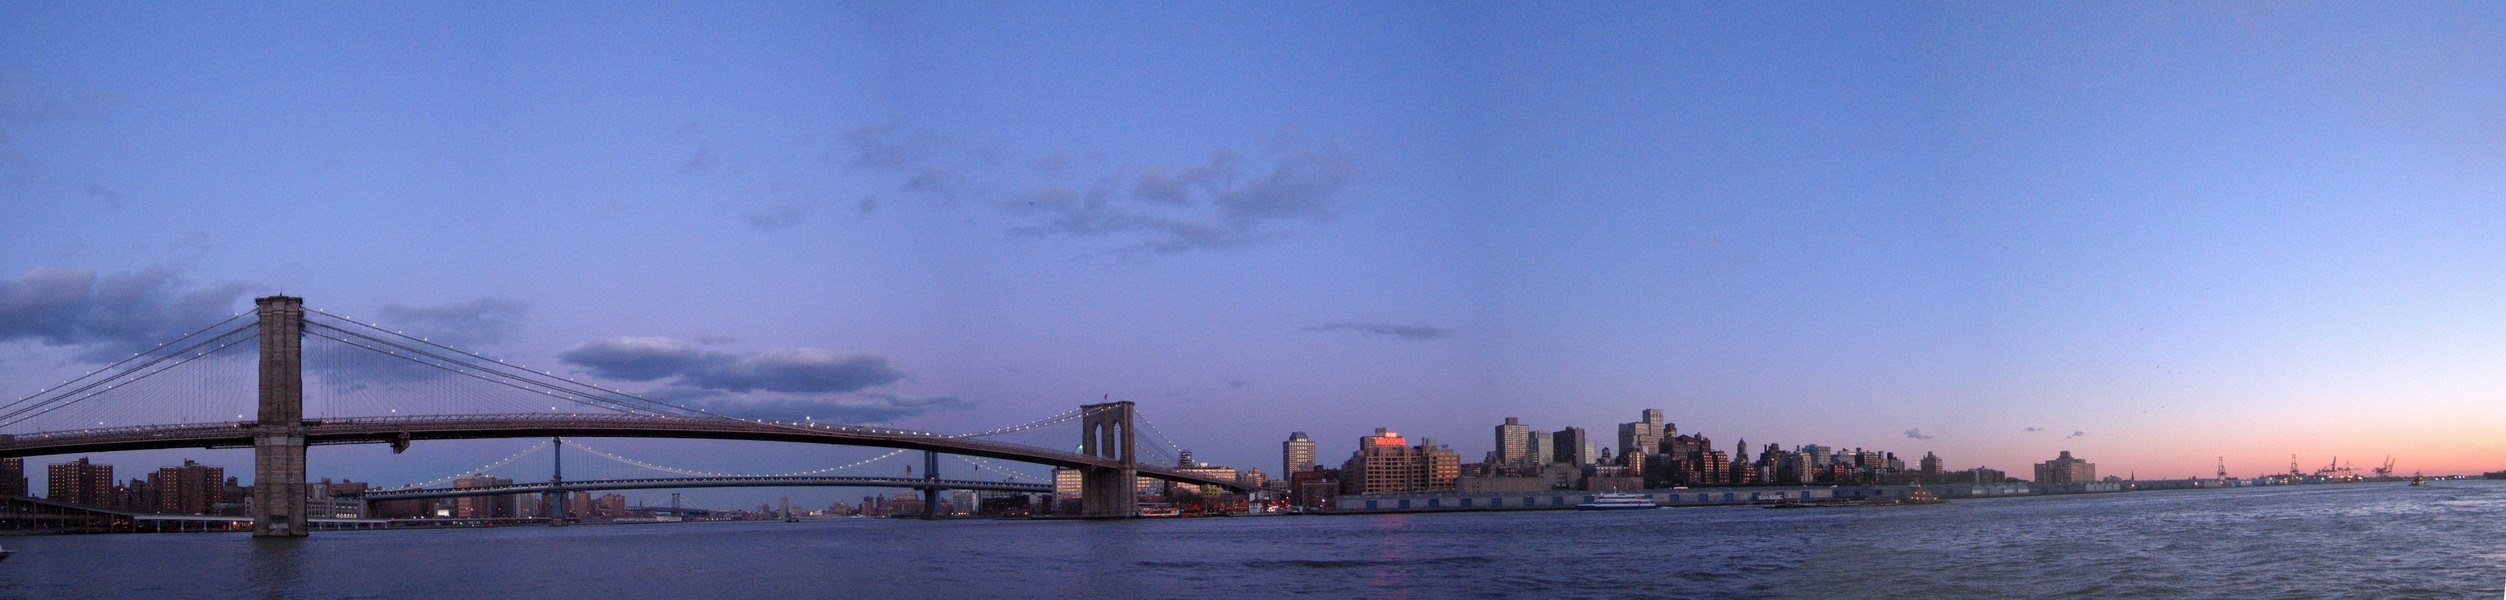 Brooklyn Bridge - the bridge to Brooklyn (February 2006)